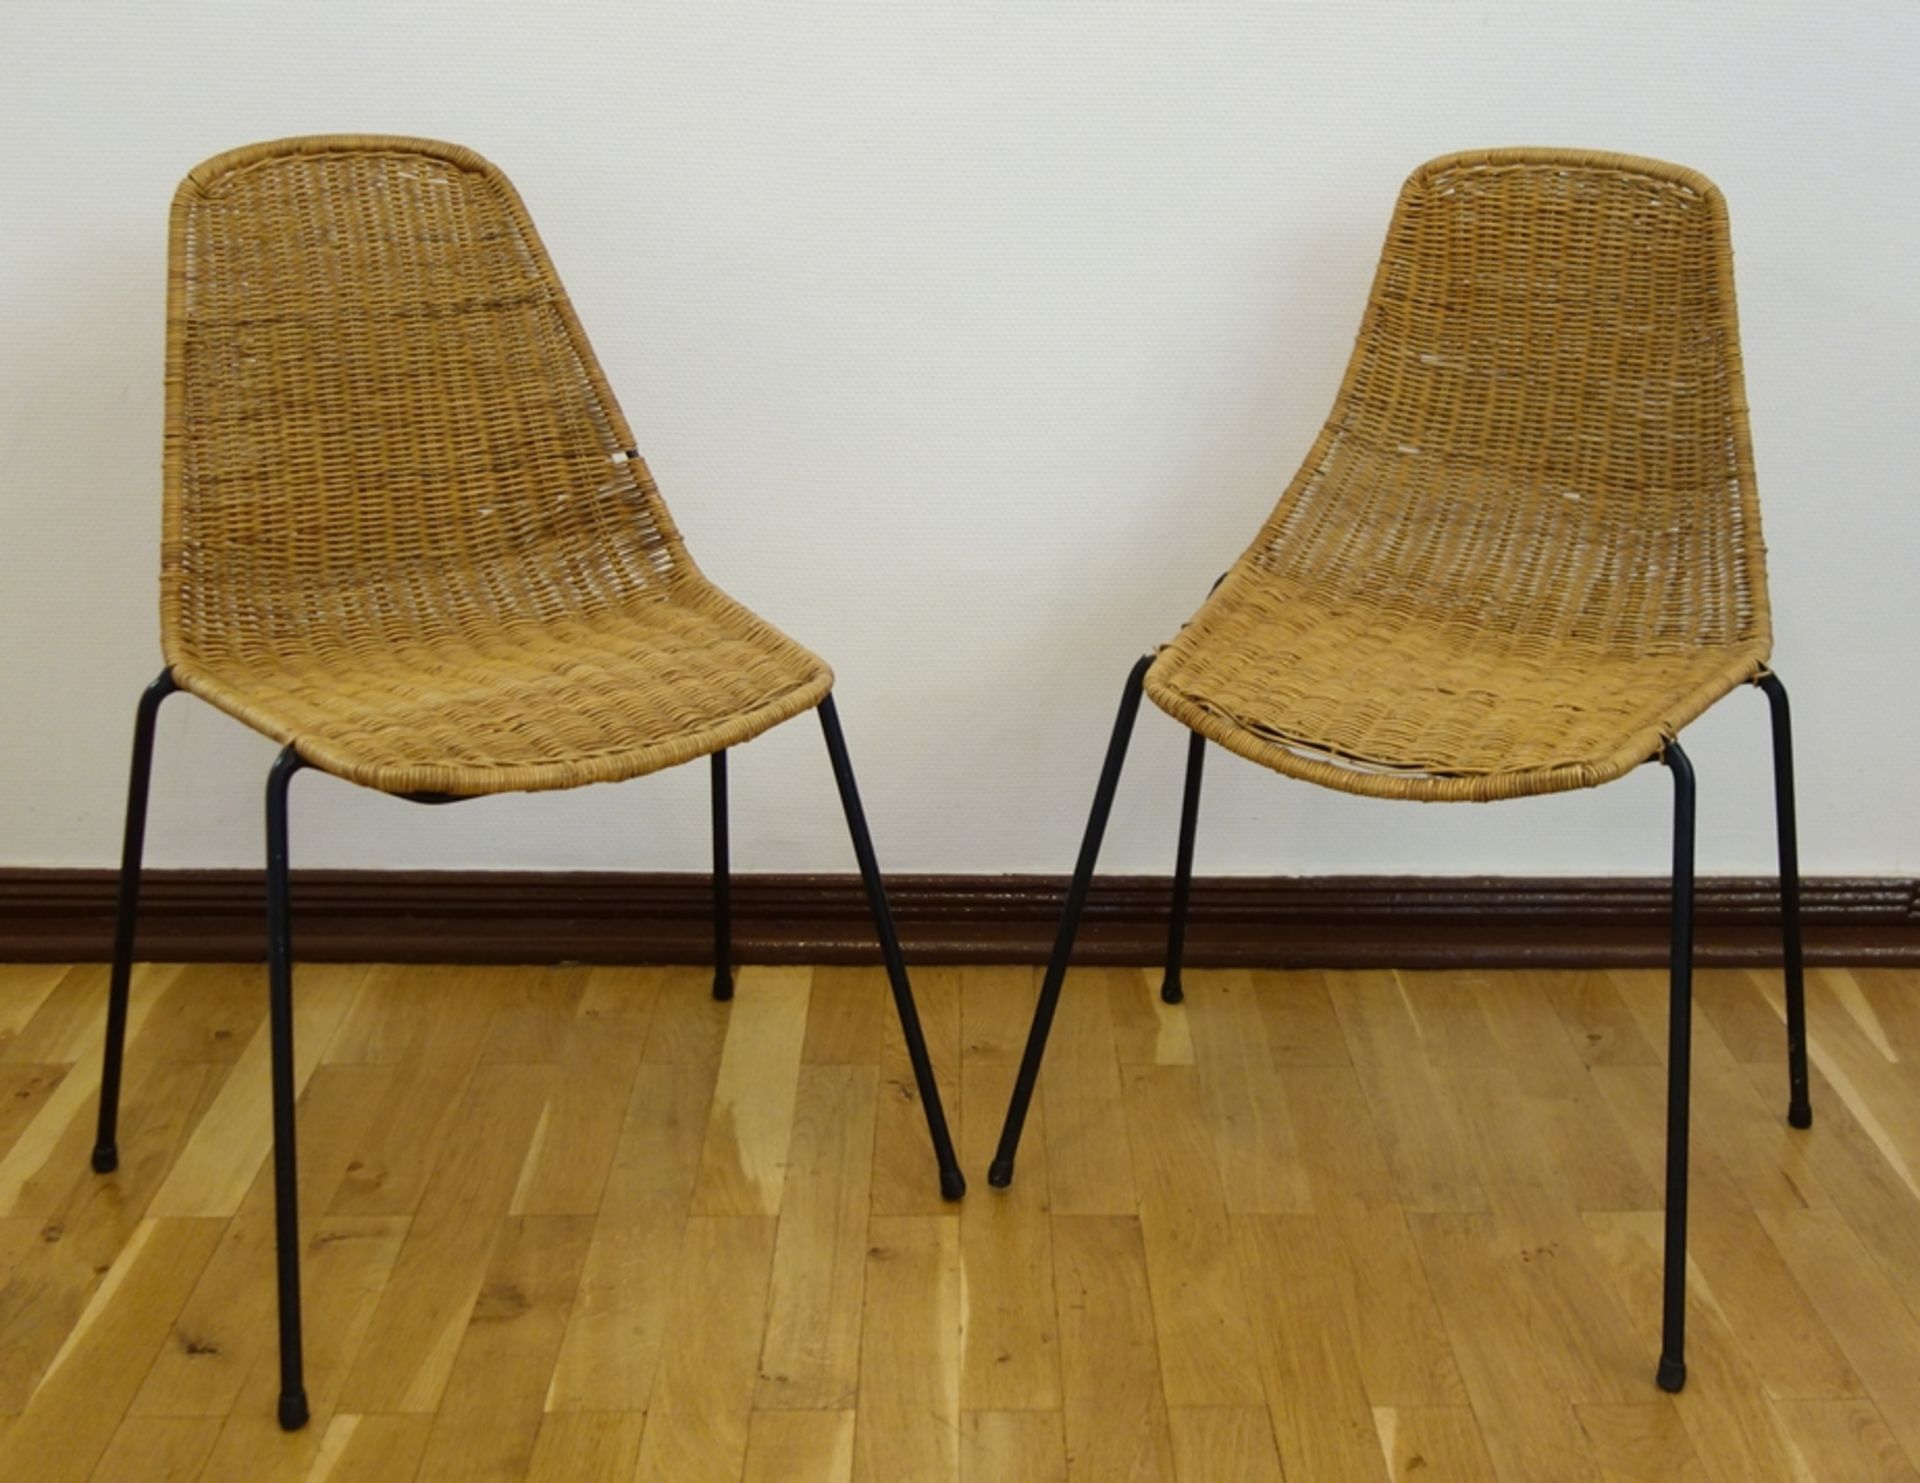 2 Korbstühle "Basket", Entwurf Gian Franco Legler 1951, Schalenform